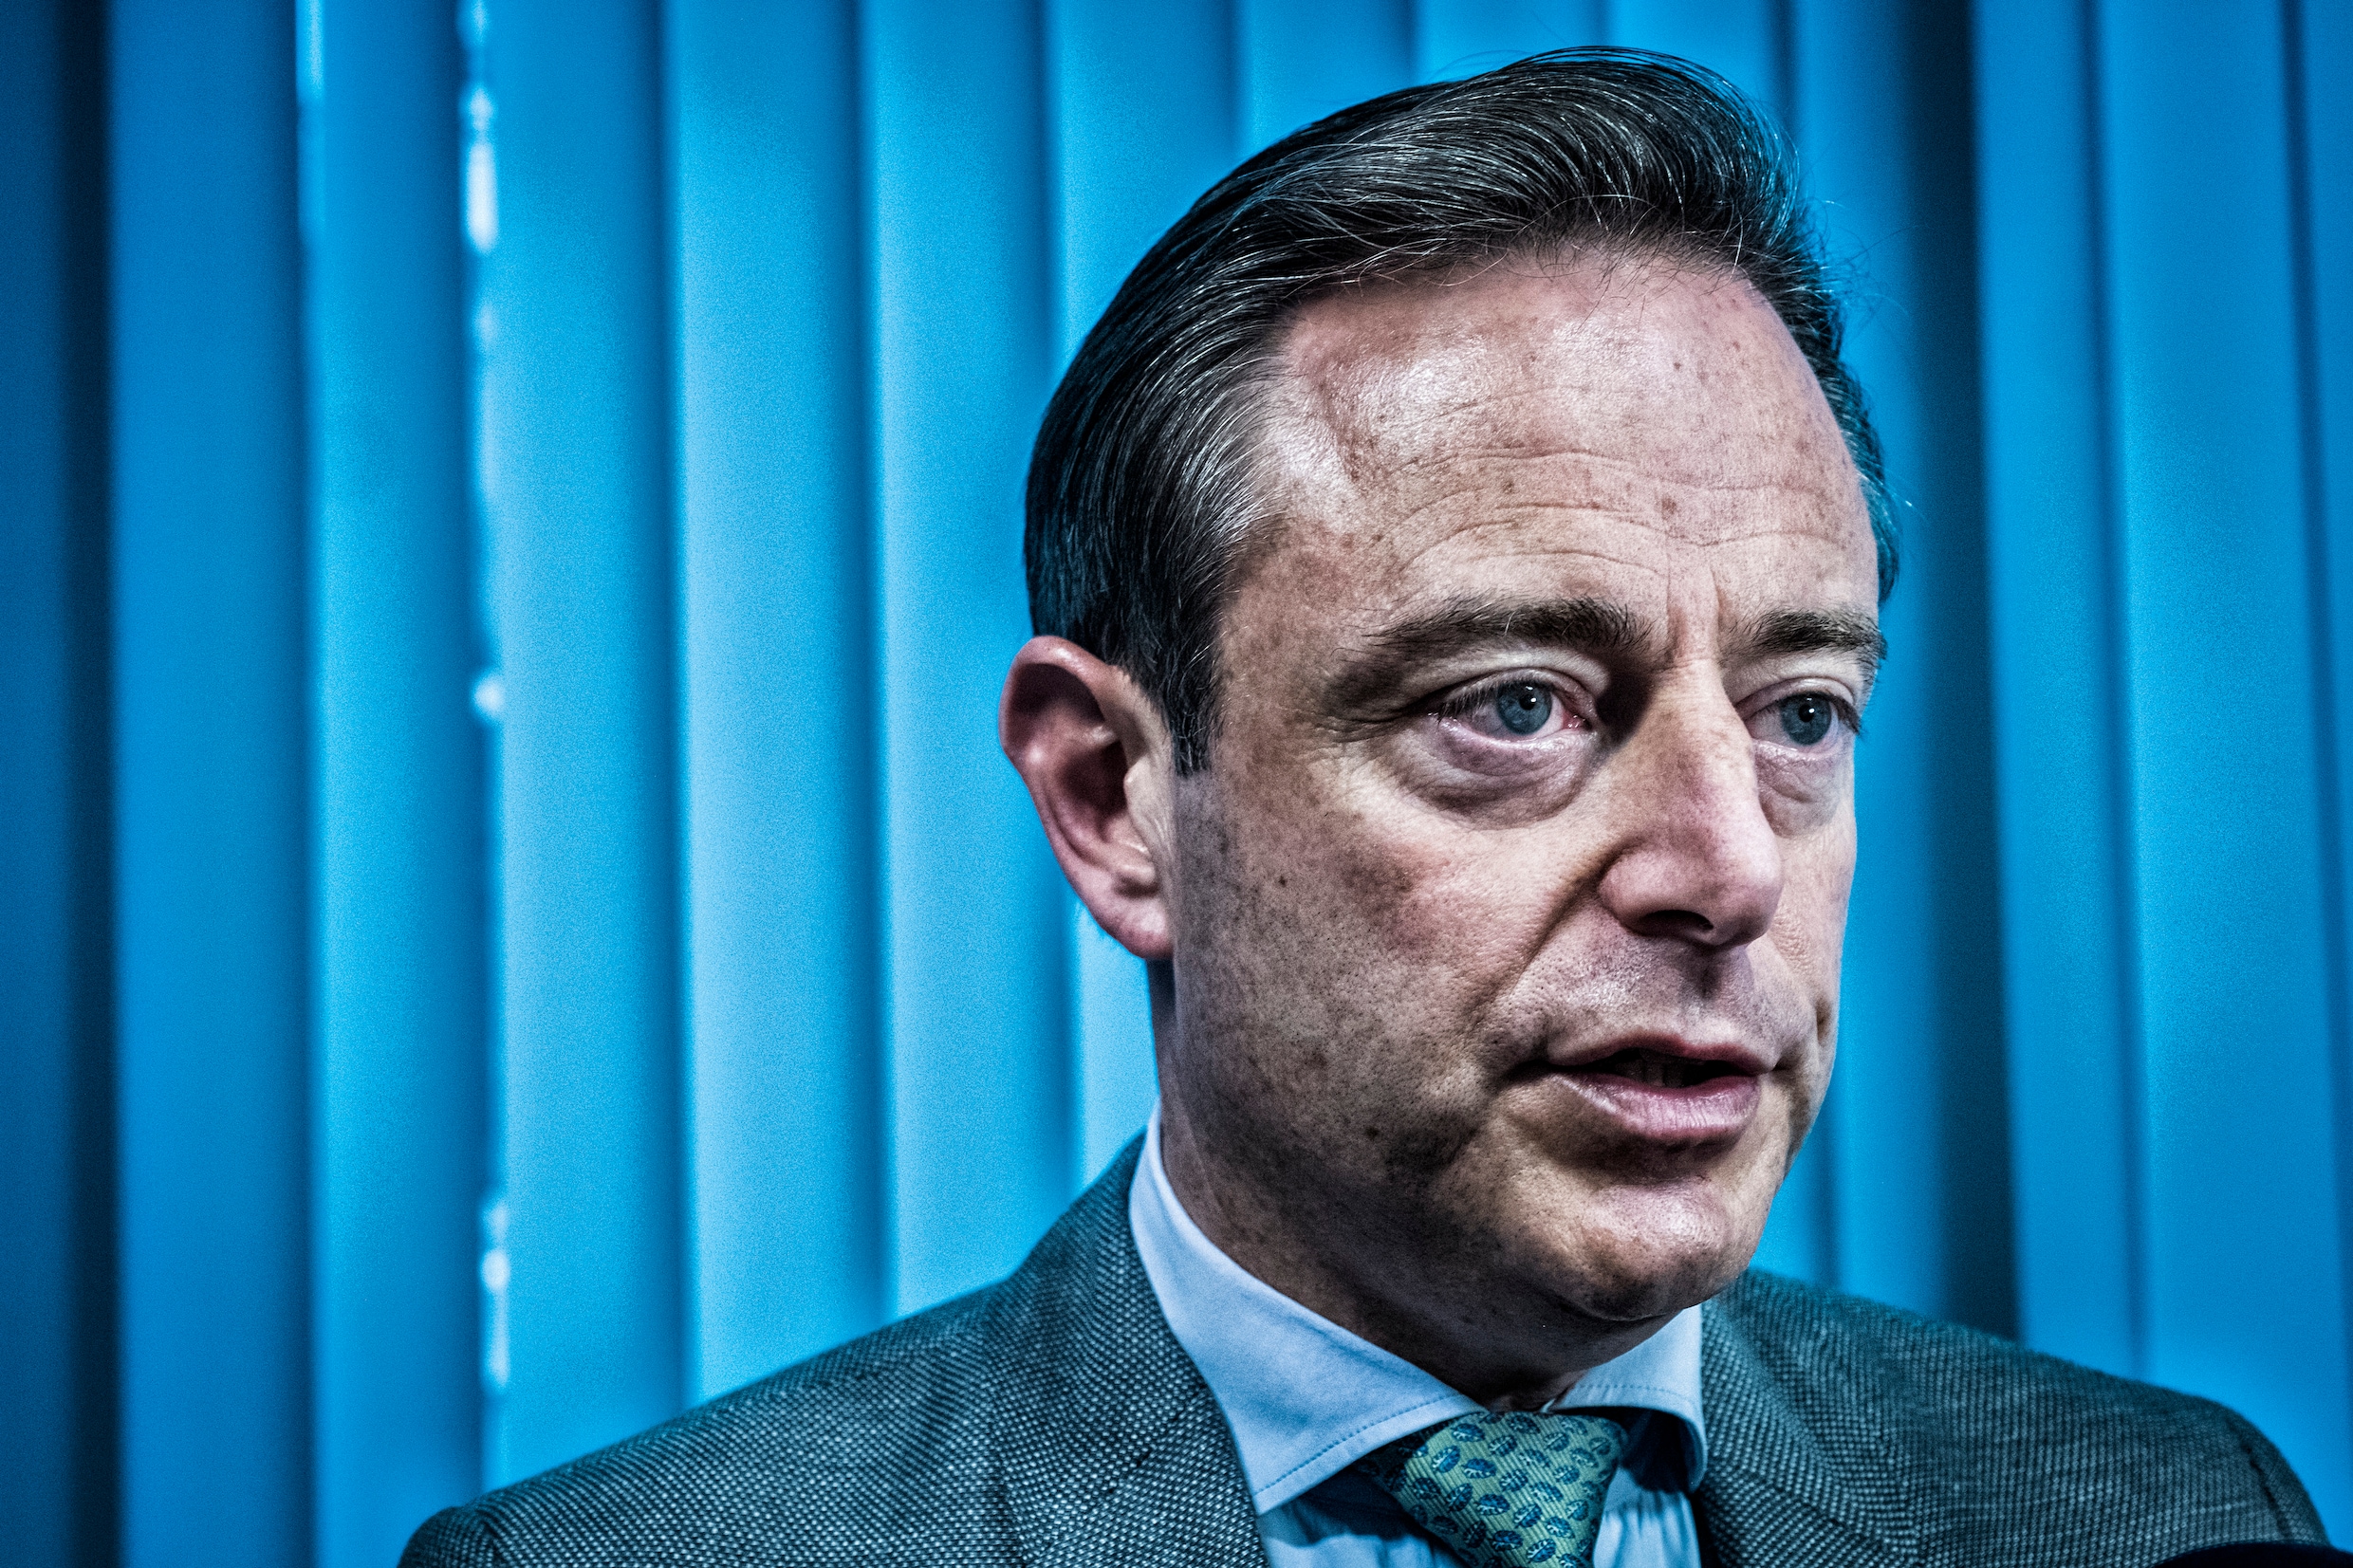 Bart De Wever (N-VA) pleit voor hereniging van Vlaanderen en Nederland